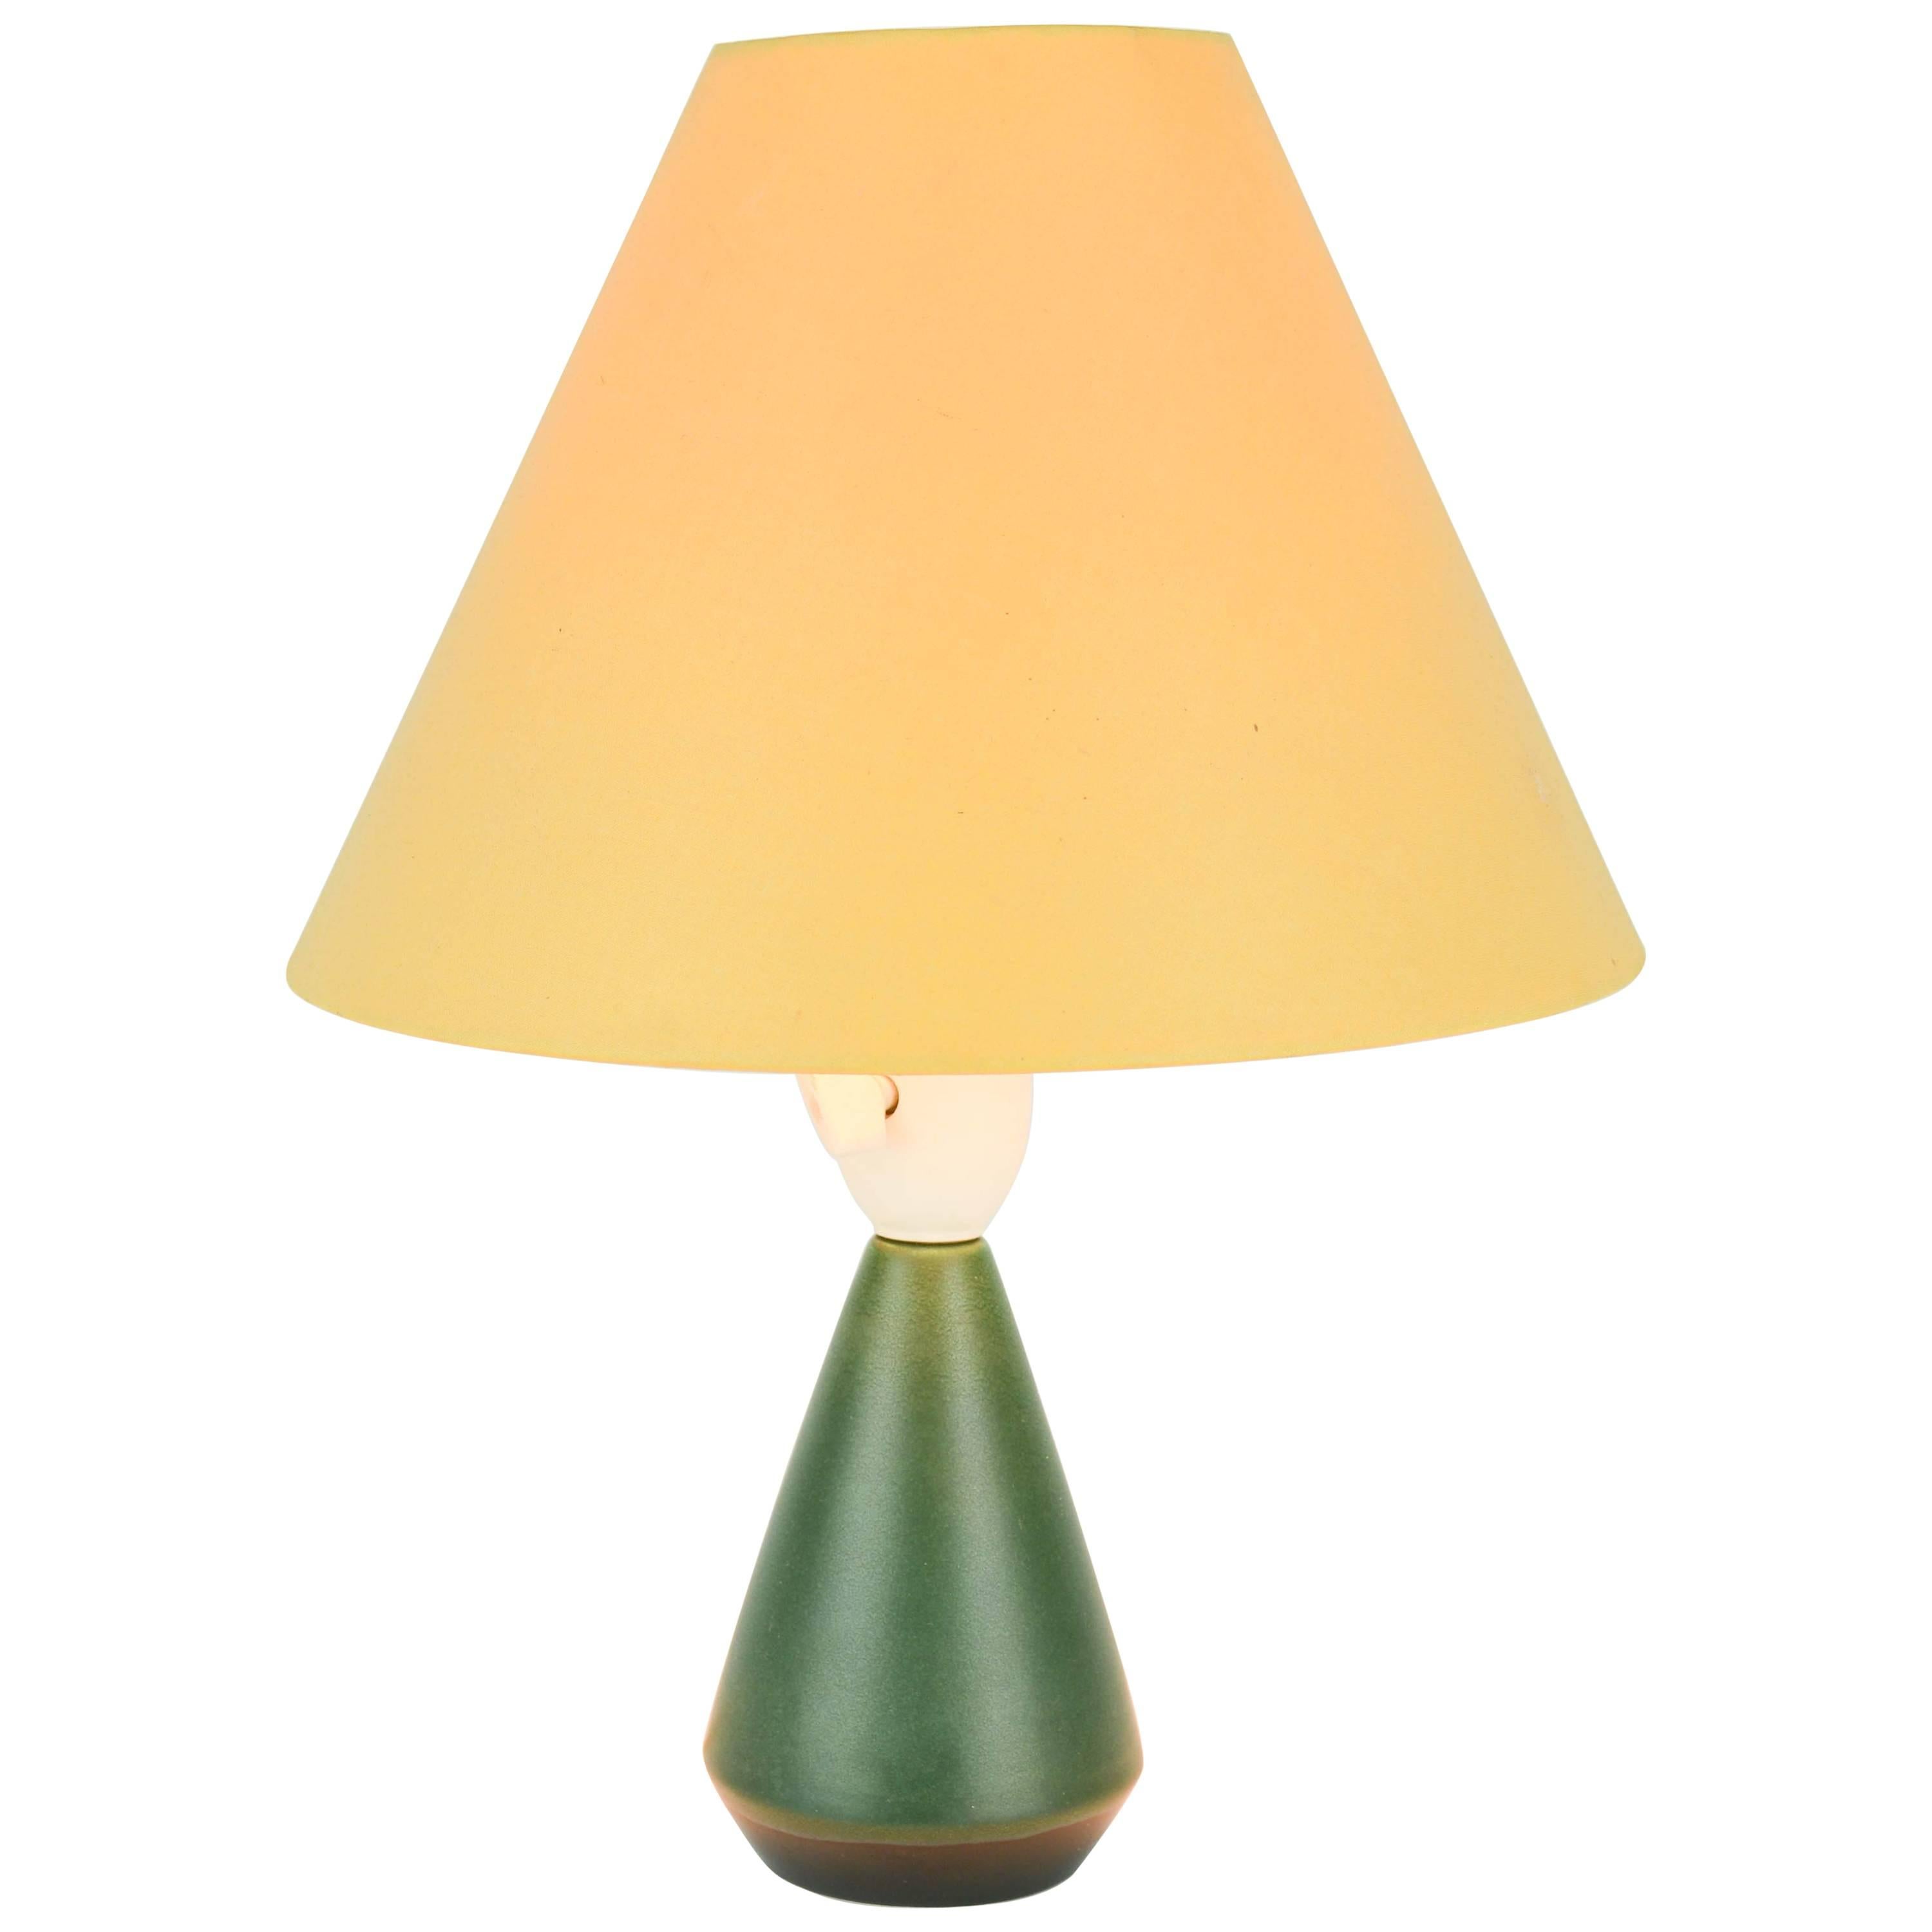 Sweet and Petite Danish Ceramic Table Lamp in Racing Green